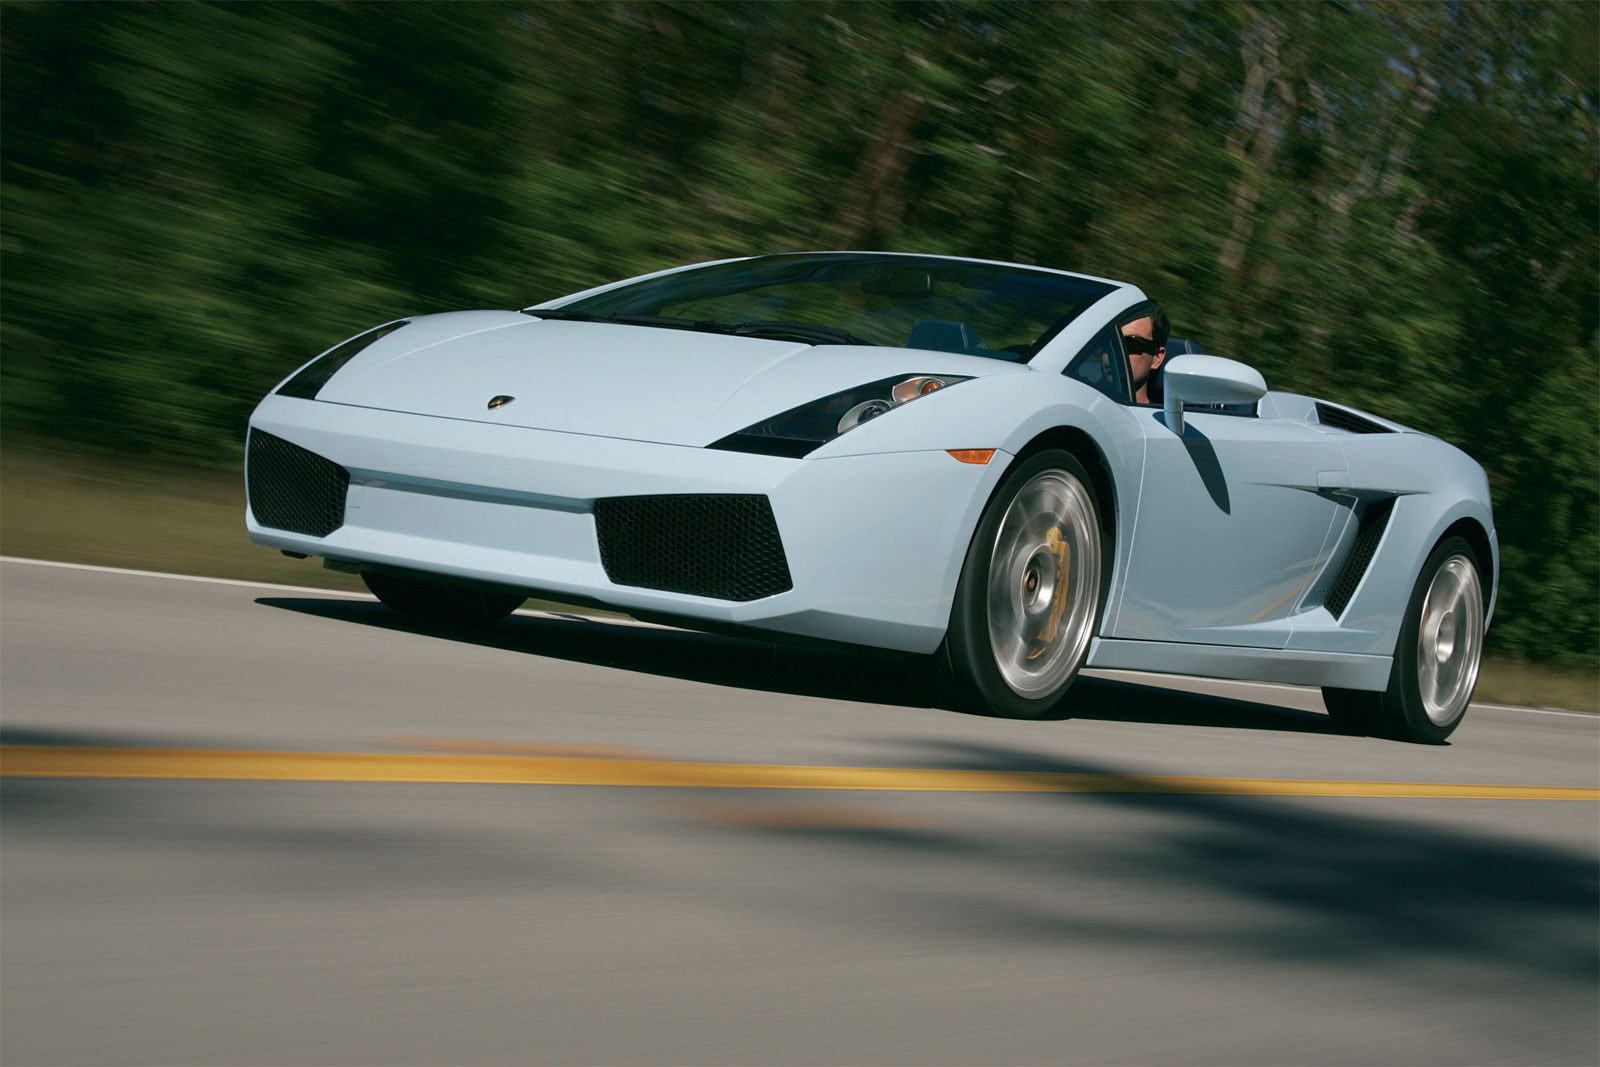 Top Gear concede el título "Dream Car" al Lamborghini Gallardo Spyder